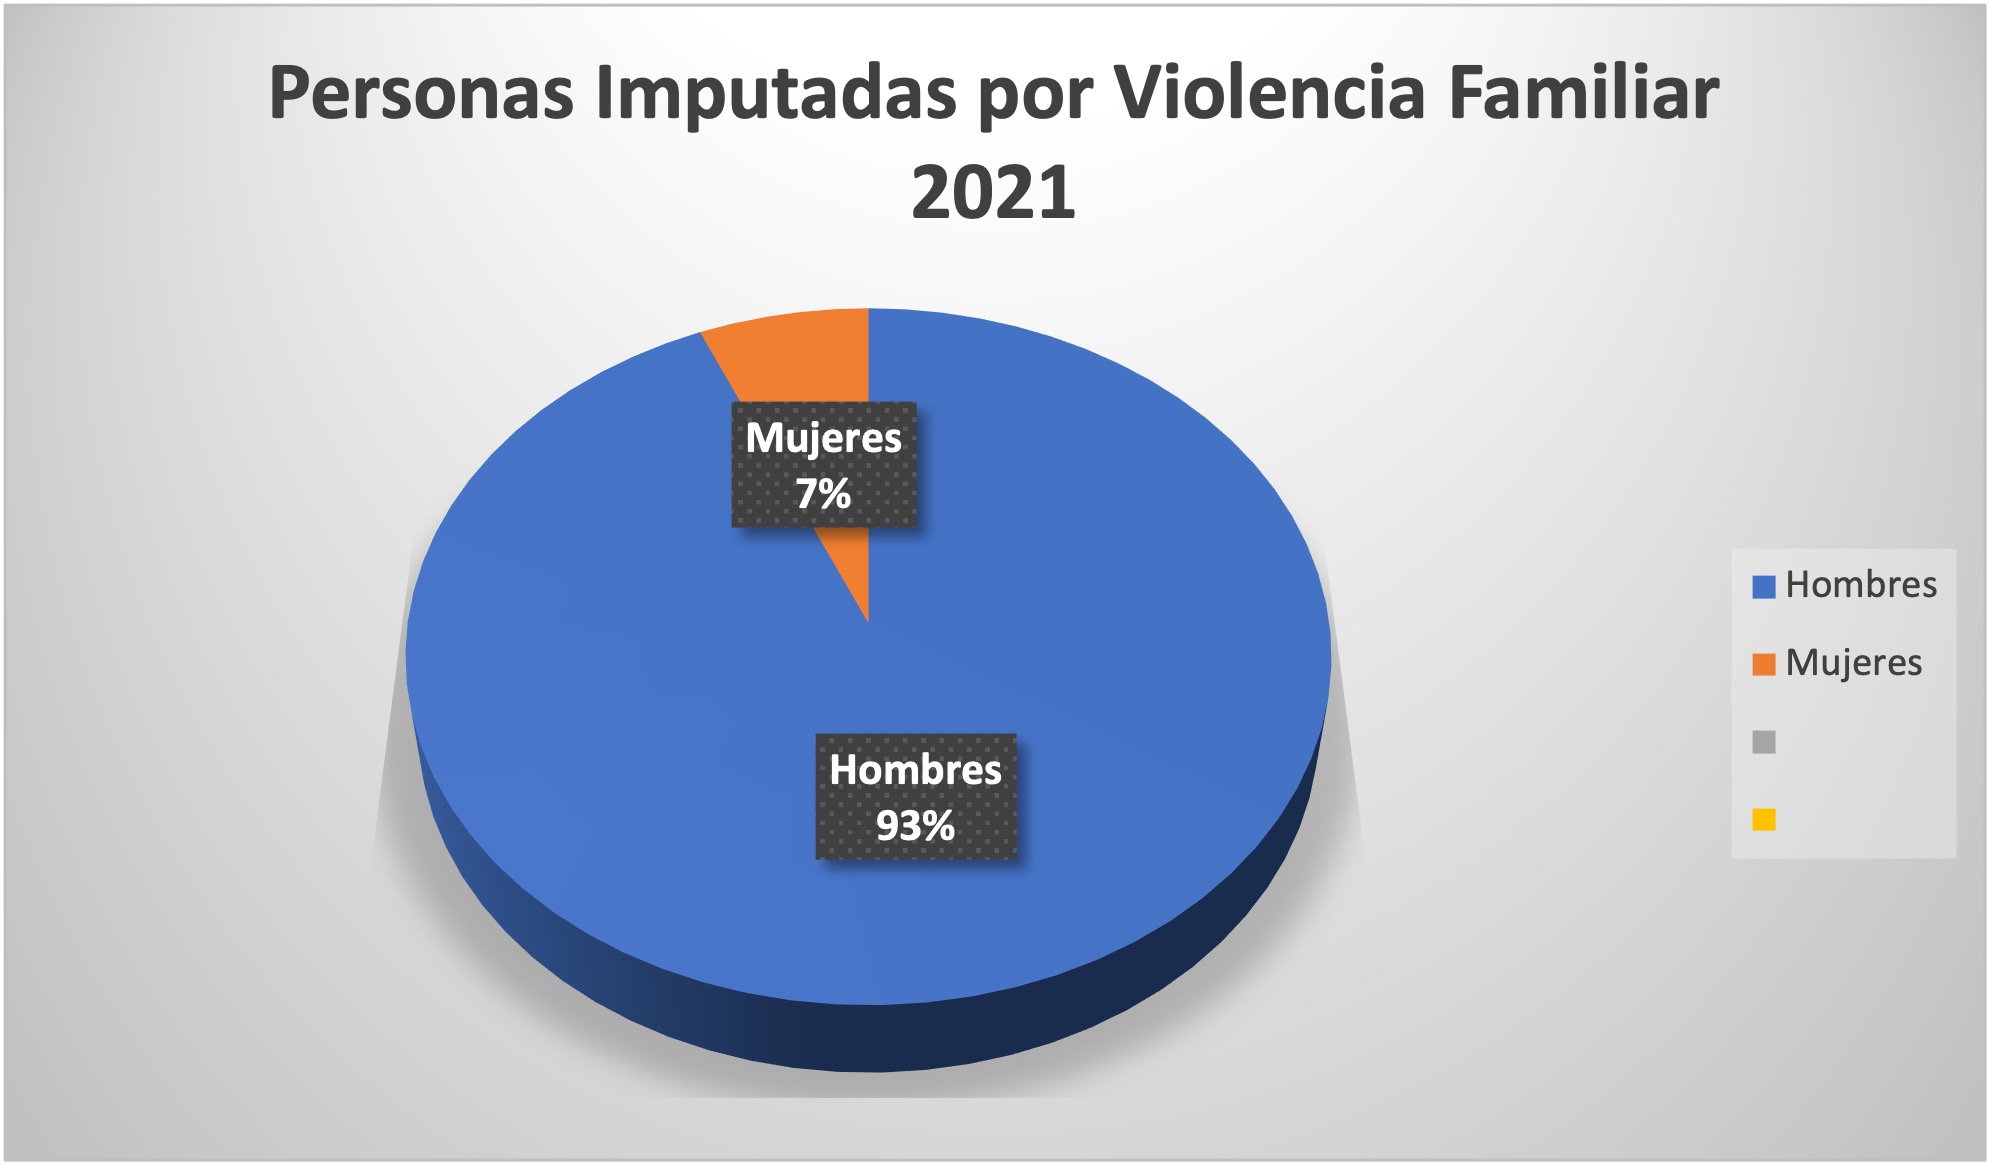 Personas imputadas por violencia familiar (2021)